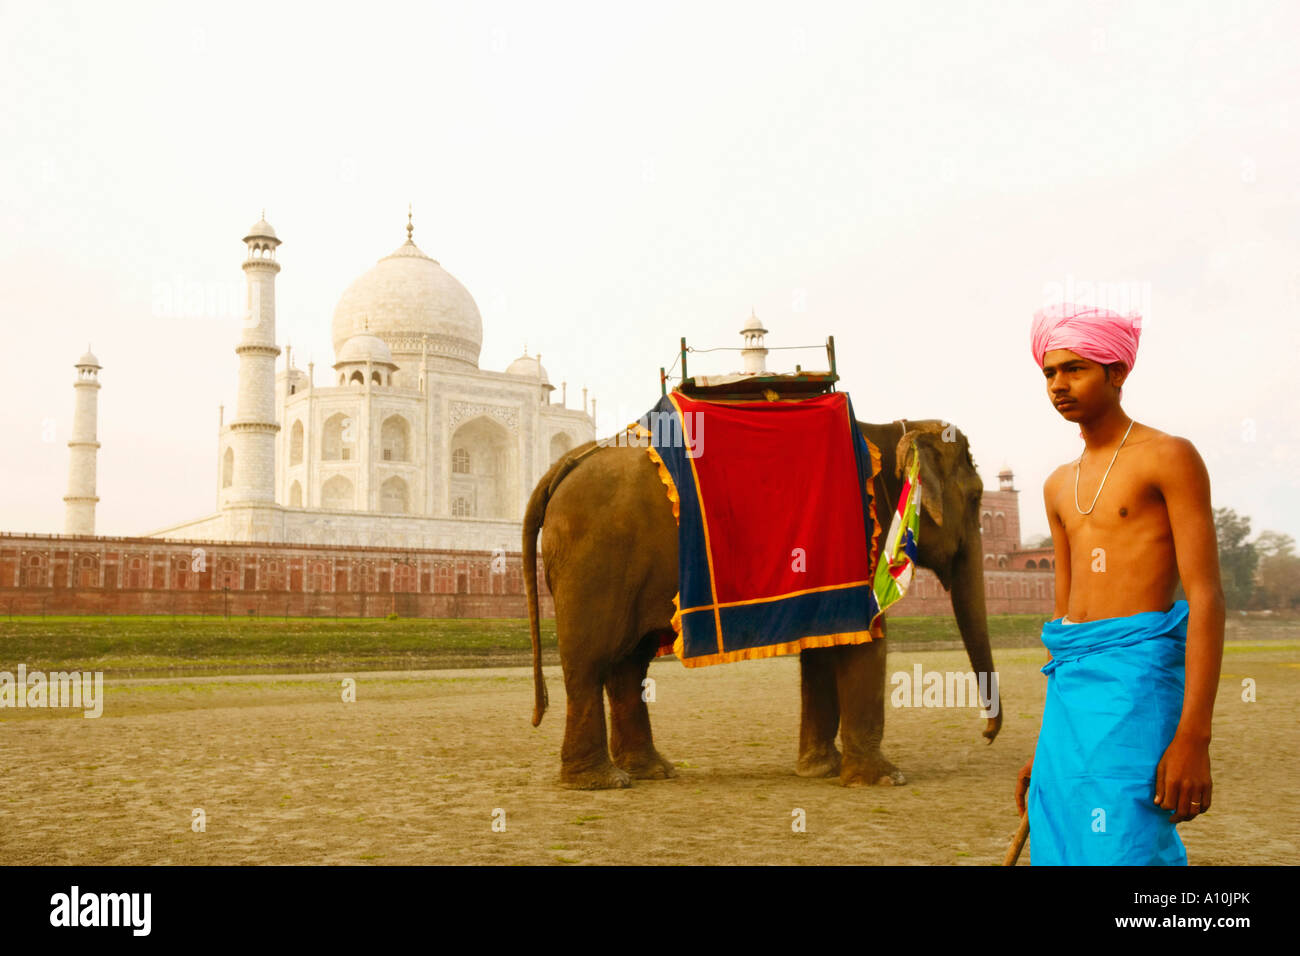 Joven parado cerca de un elefante, el Taj Mahal, Agra, Uttar Pradesh, India Foto de stock